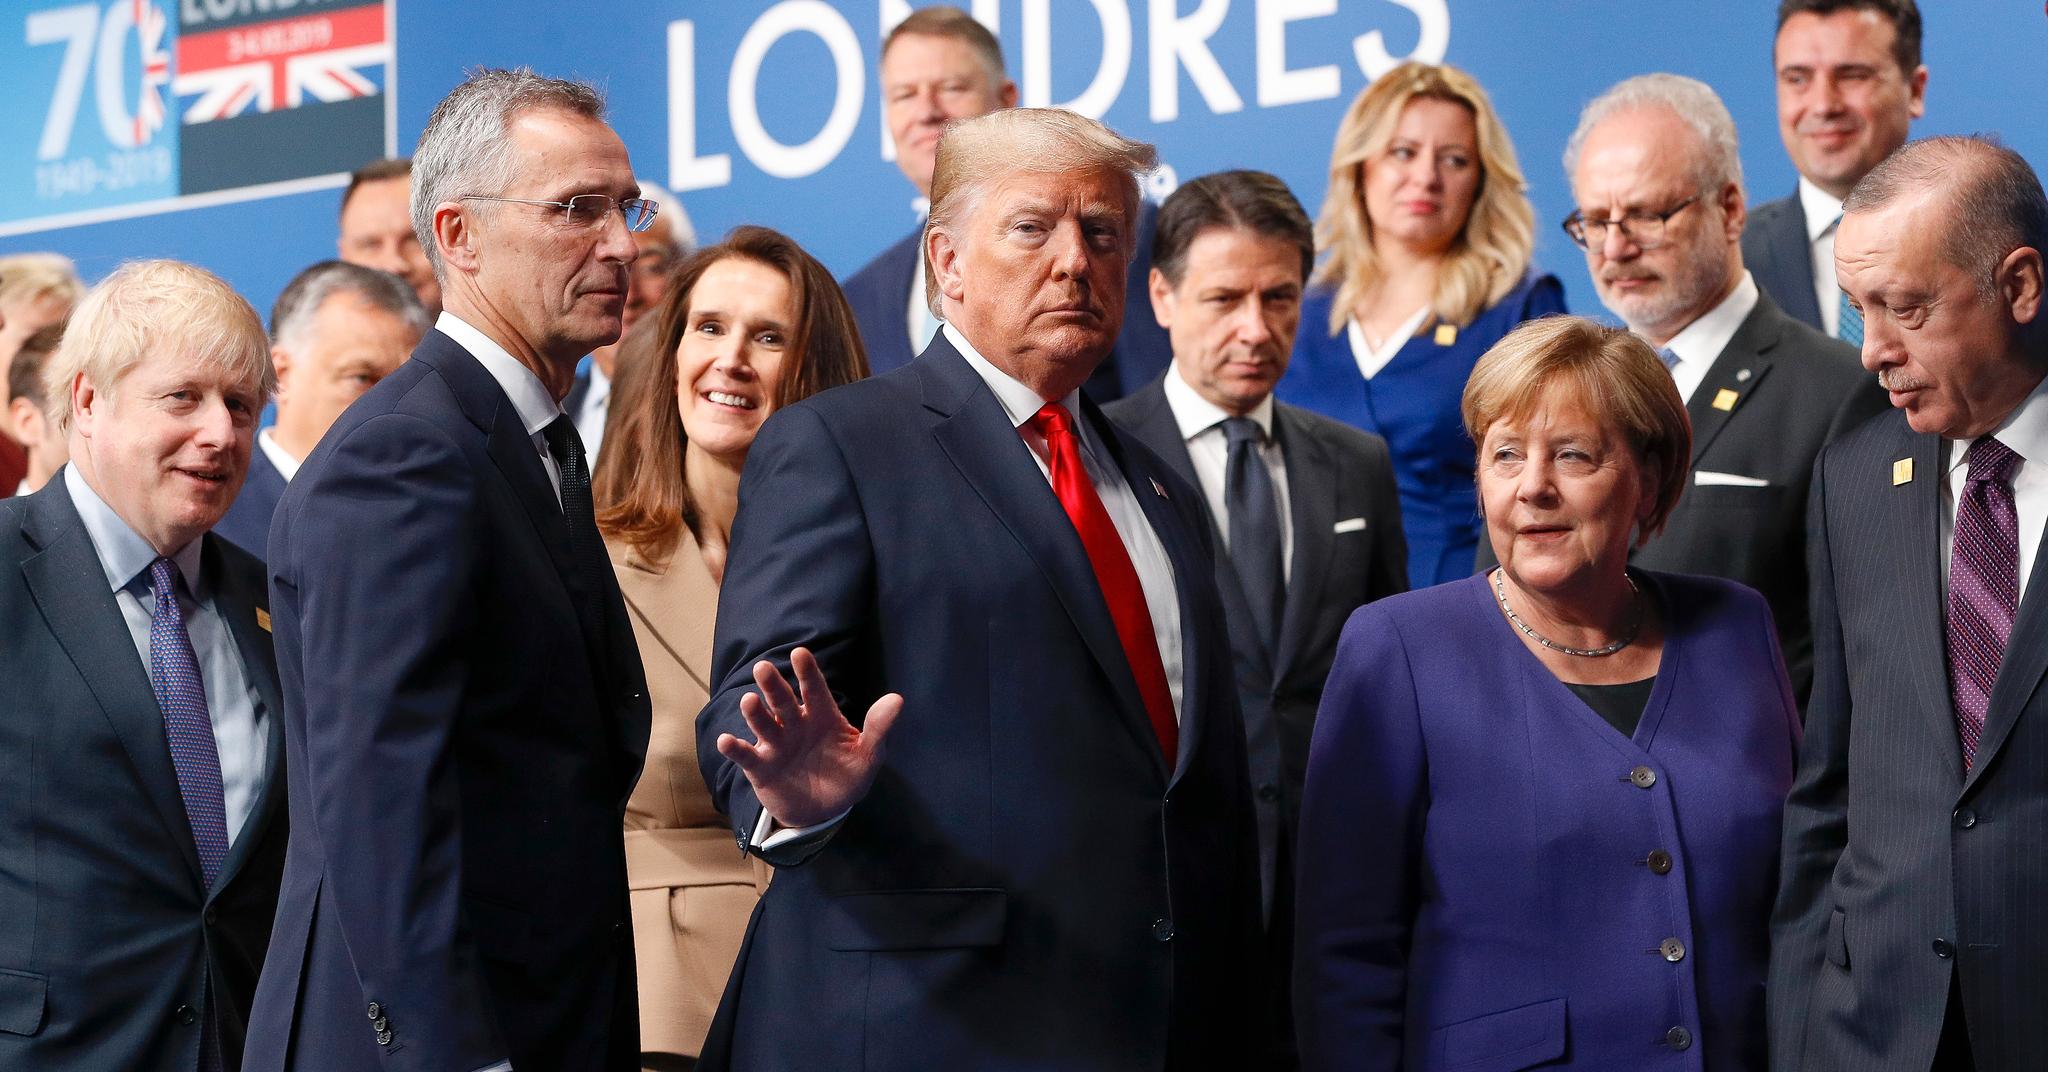 Familiefoto på NATO-toppmøtet i London nylig. Fremste rekke fra venstre: Boris Johnson, Jens Stoltenberg, Donald Trump, Engela Merkel og Recep Tayyip Erdogan.